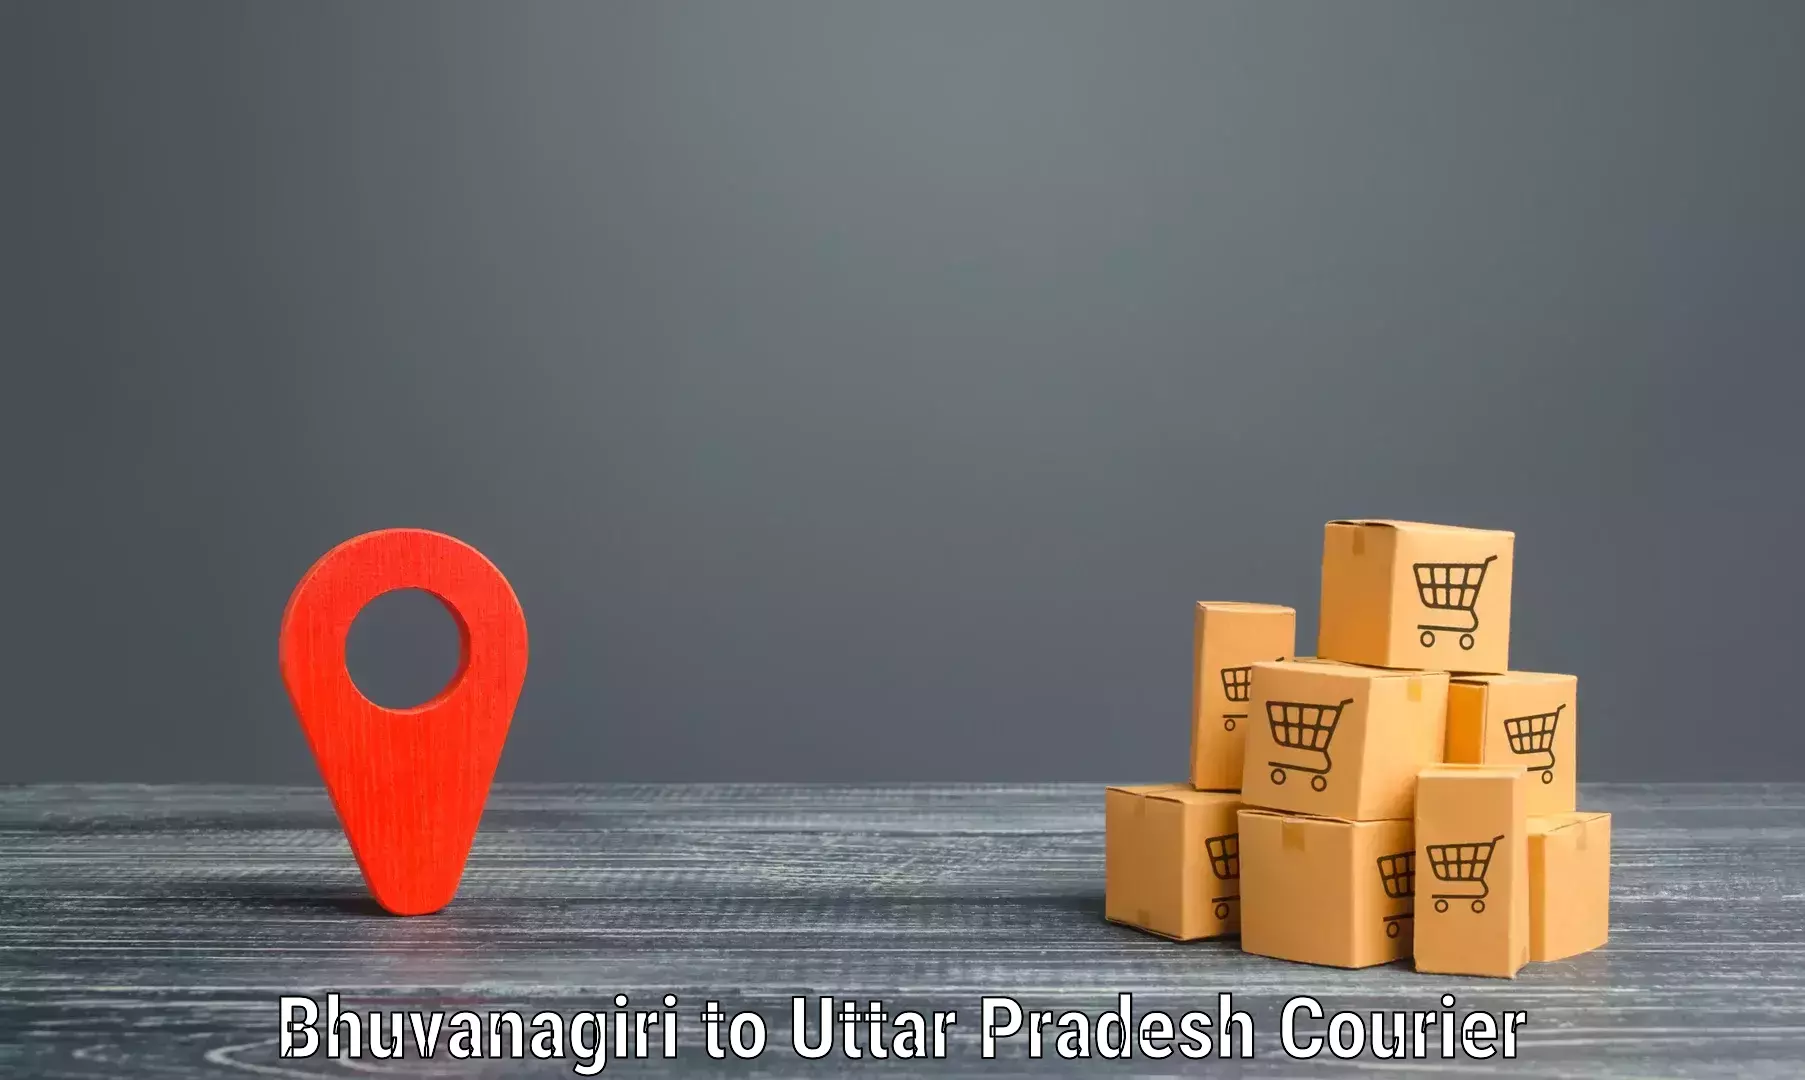 Advanced shipping network Bhuvanagiri to Bharwari